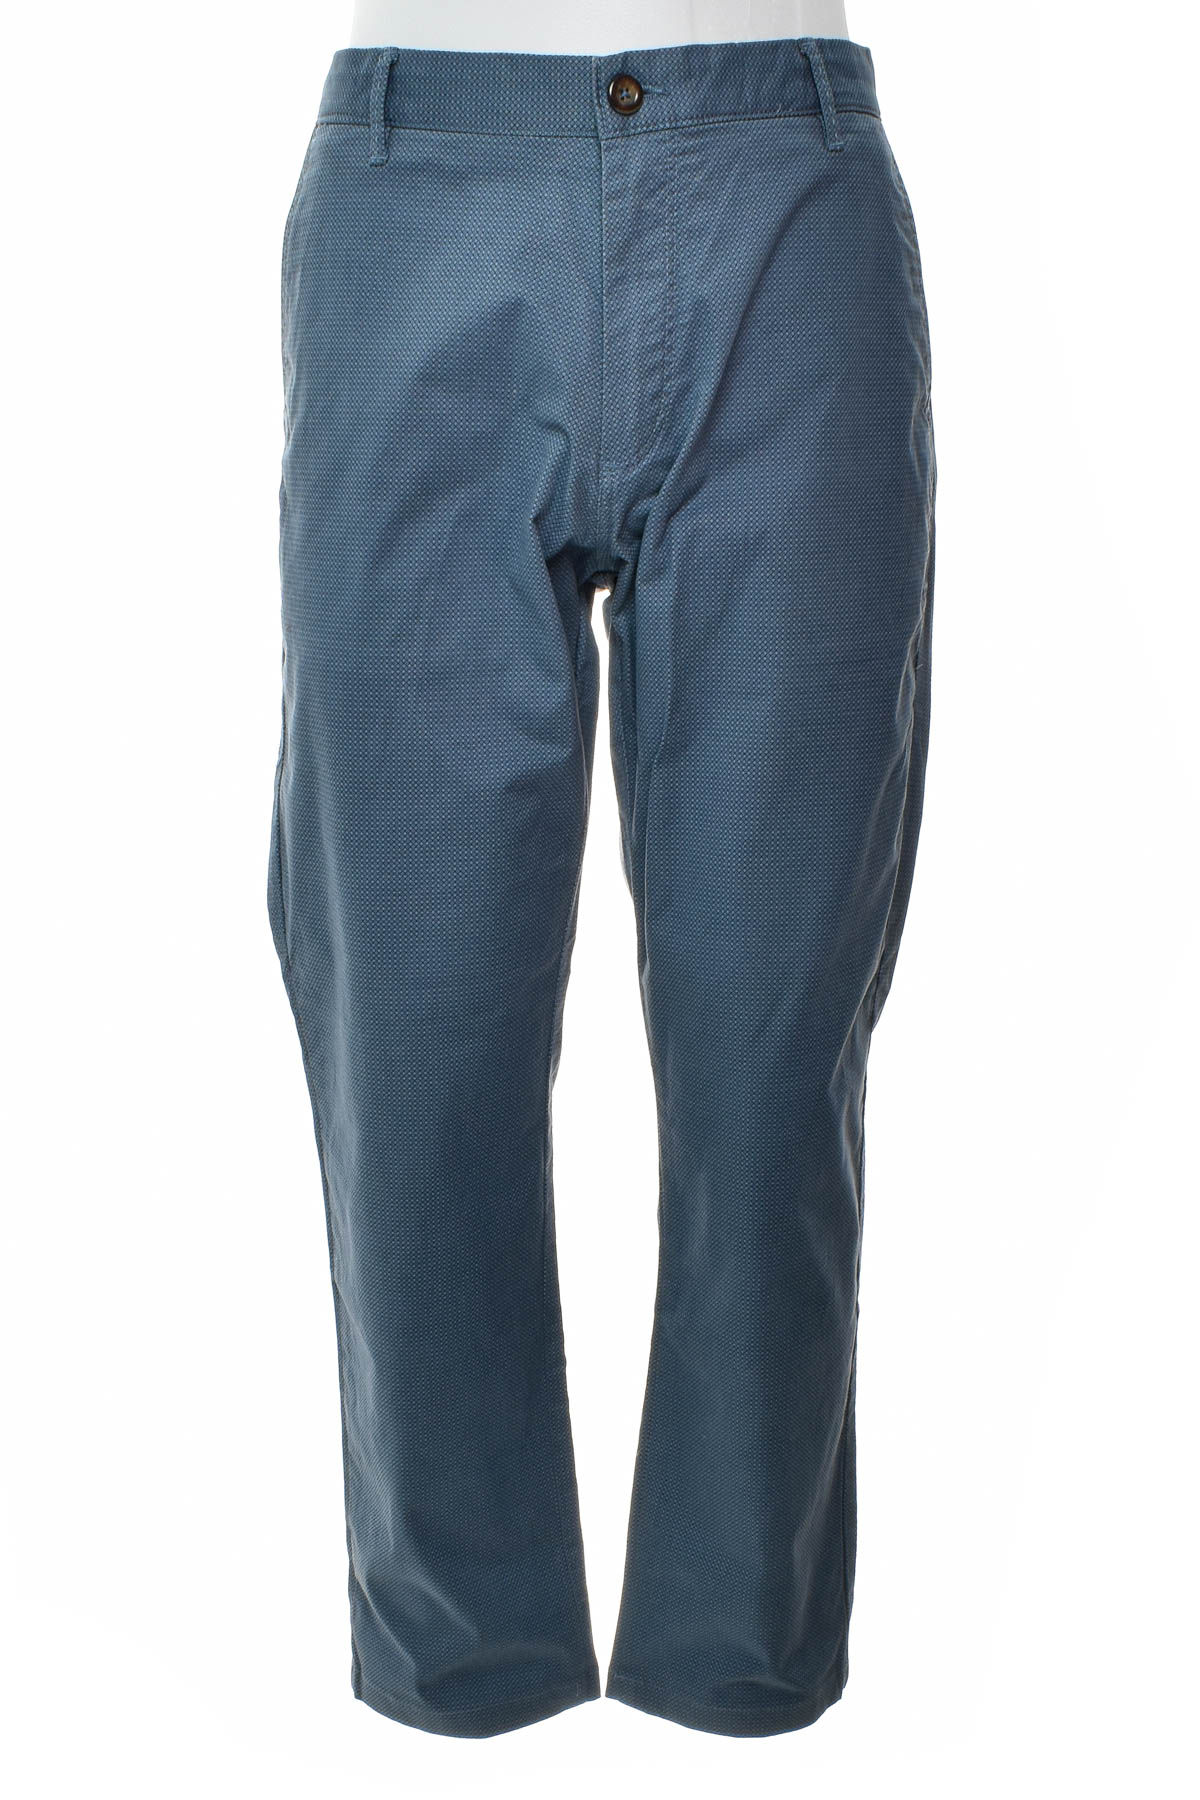 Pantalon pentru bărbați - RESERVED - 0